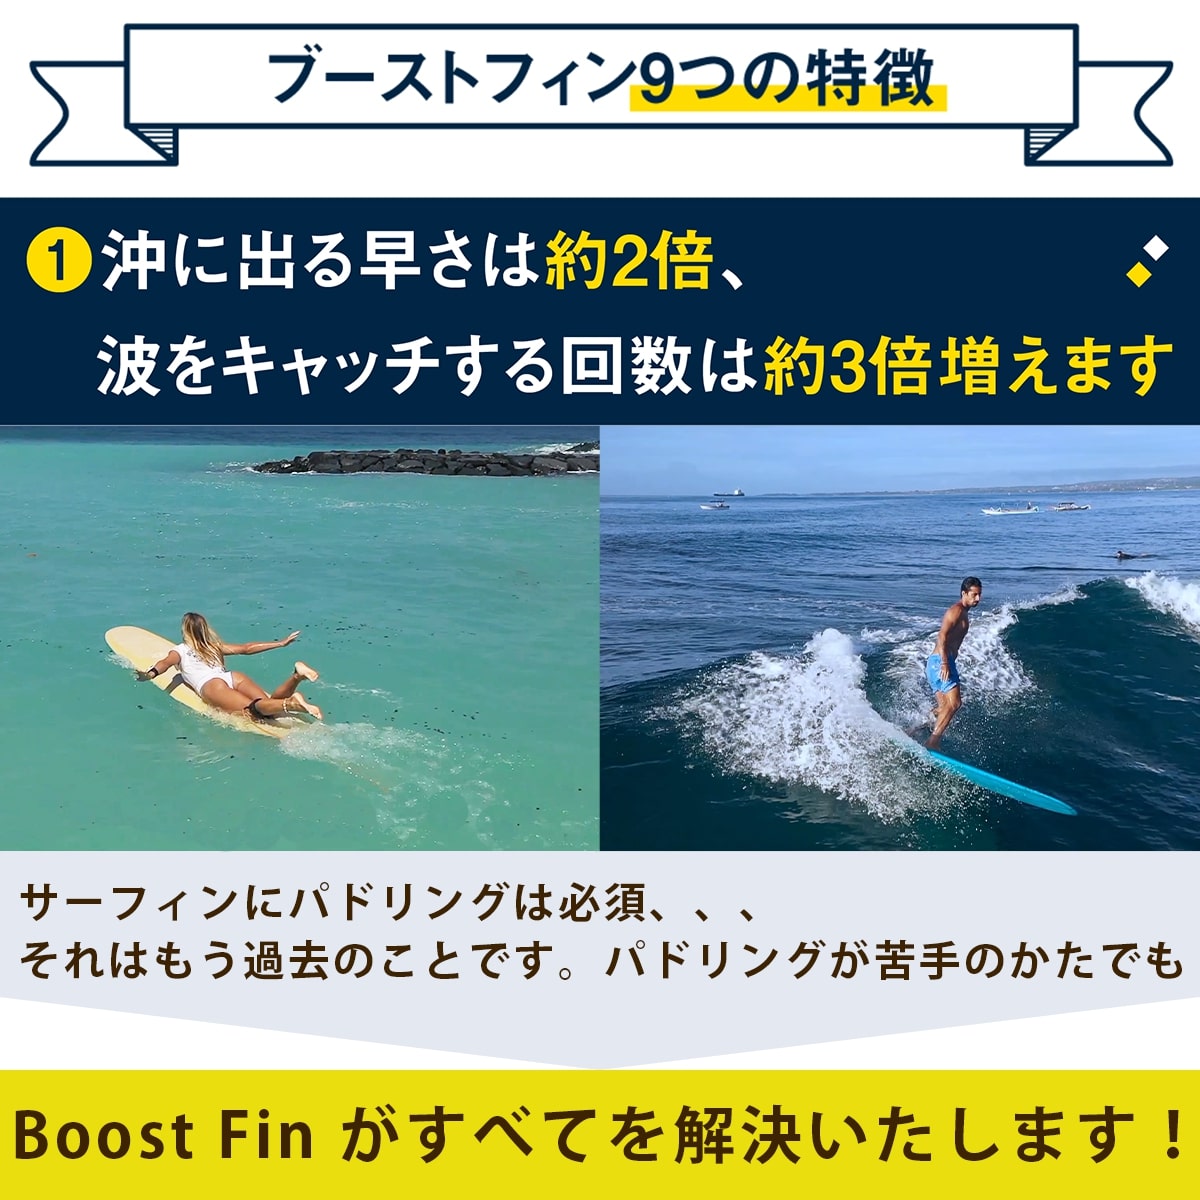 サーフボード 電動フィン ブーストフィンプラス Boost Fin Plus サーフィン サップ SUP 電動アシスト付きフィン リモコン付き  日本正規品 ロングボード サーフィン、ボディボード